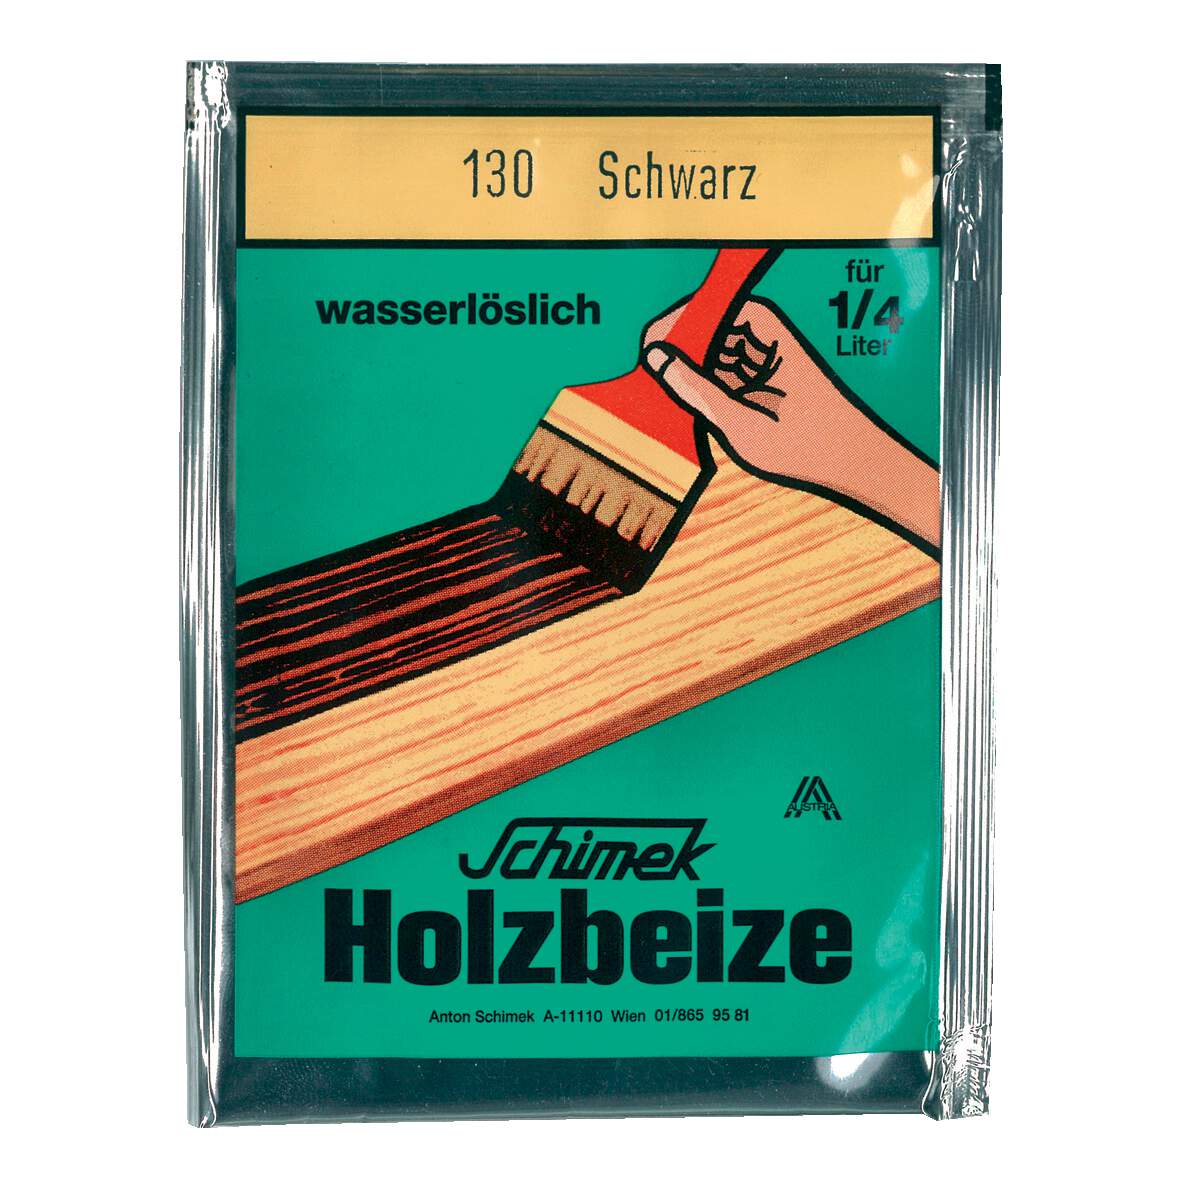 1216631 - Holzbeize wasserlöslich